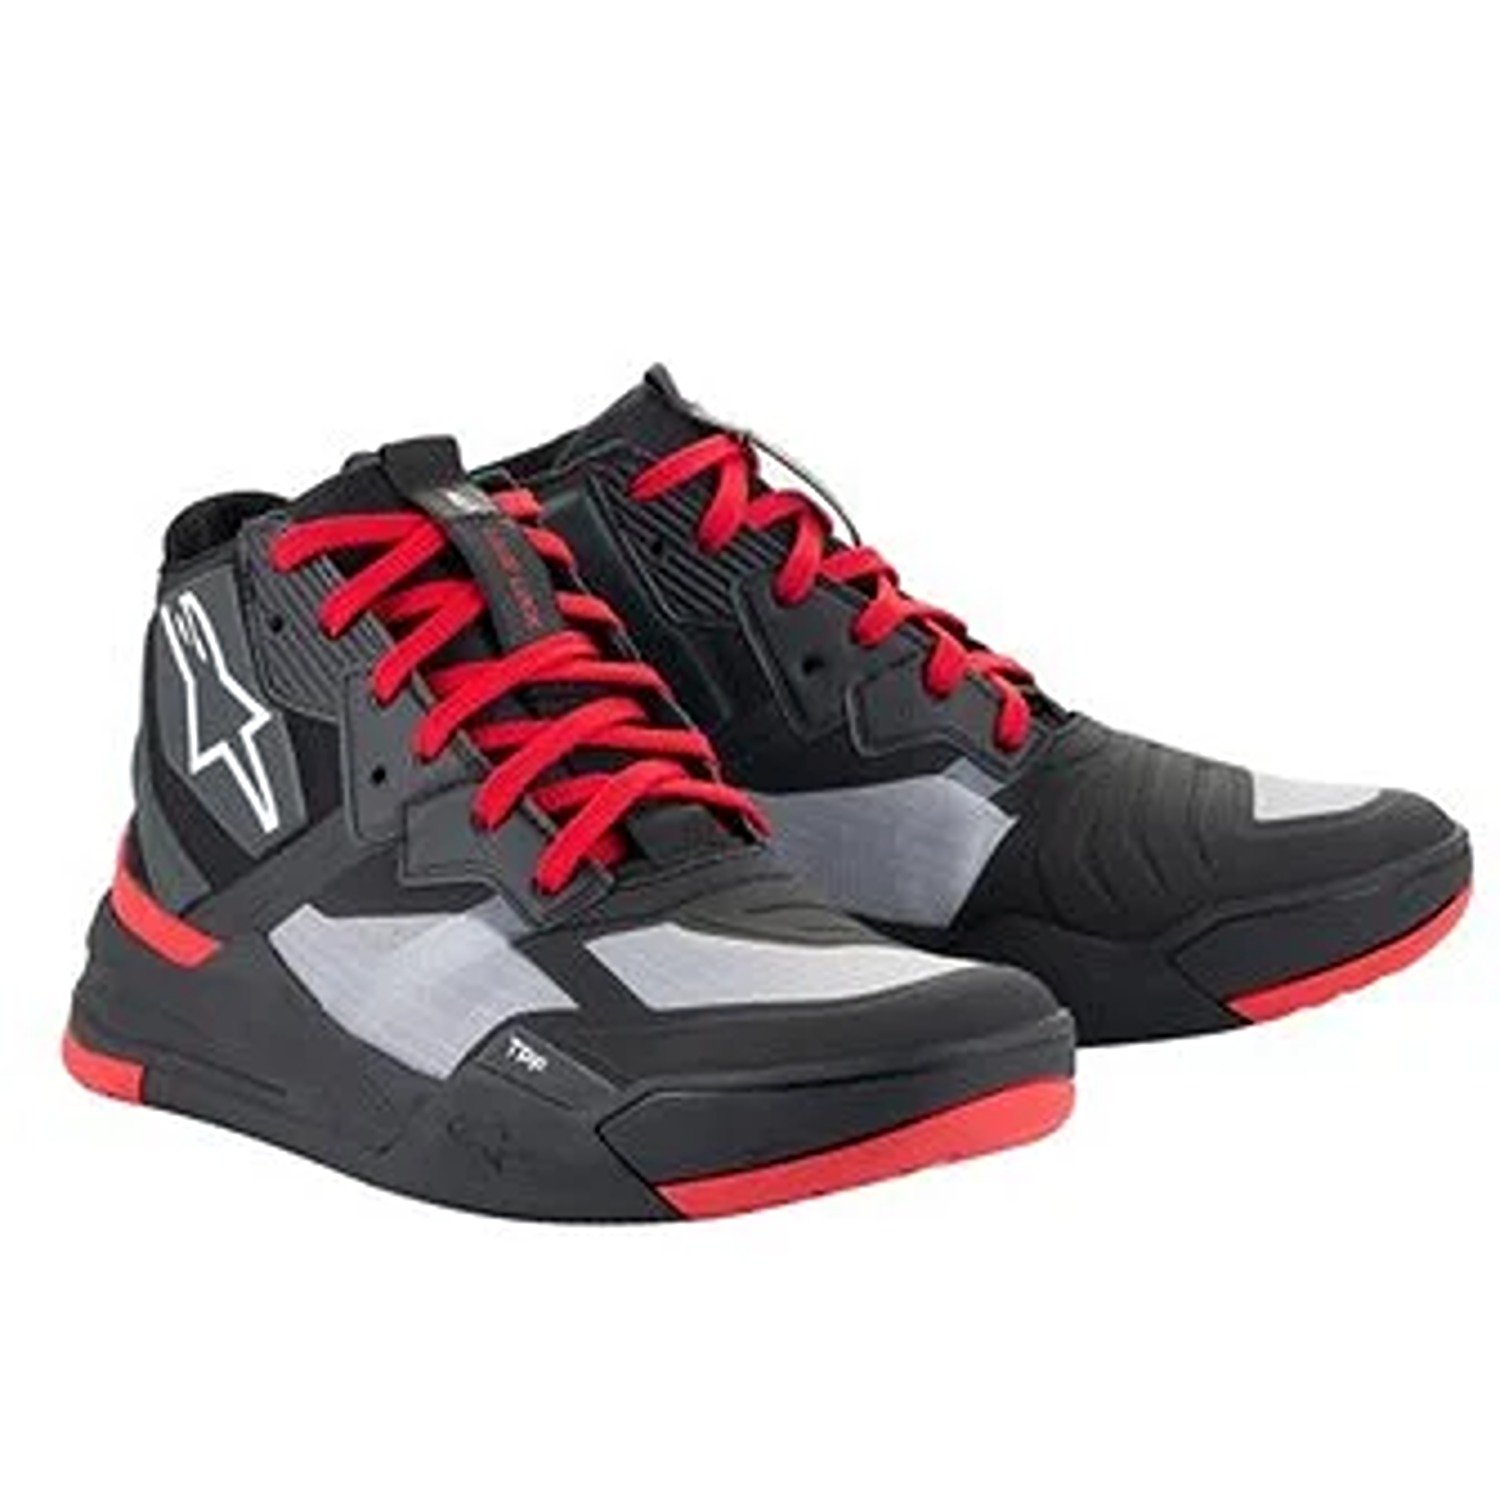 Image of Alpinestars Speedflight Shoes Black Bright Red White Größe US 115